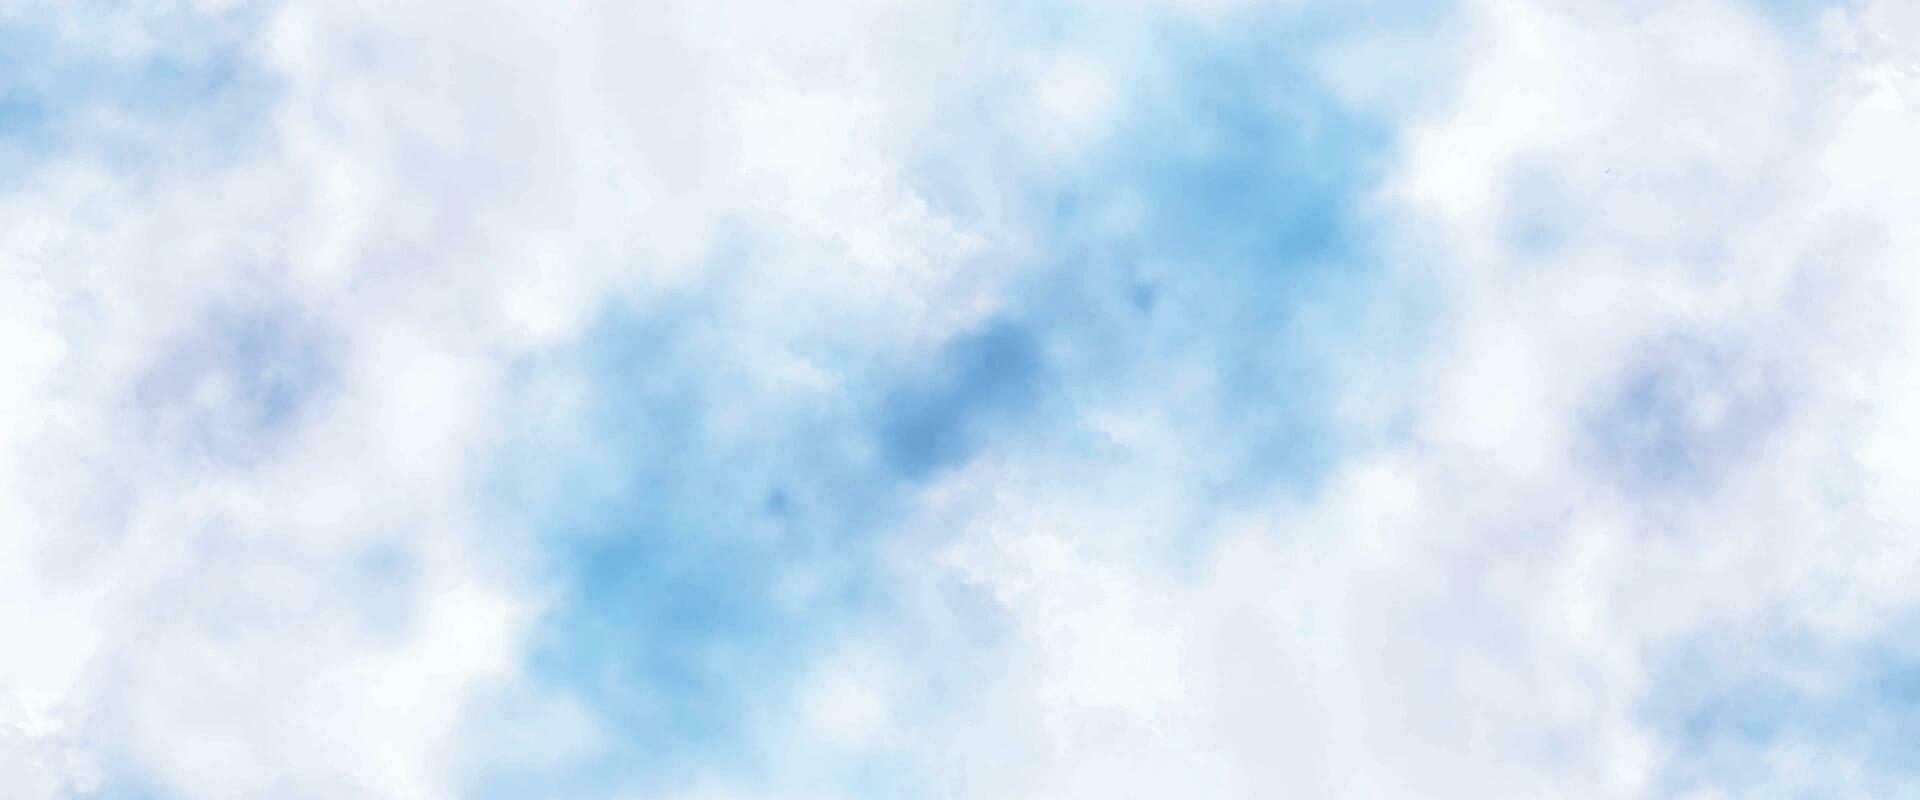 abstrato fundo com uma colorida aguarela Espirrar Projeto do azul. azul céu e nuvens. azul aguarela mancha fundo. vetor